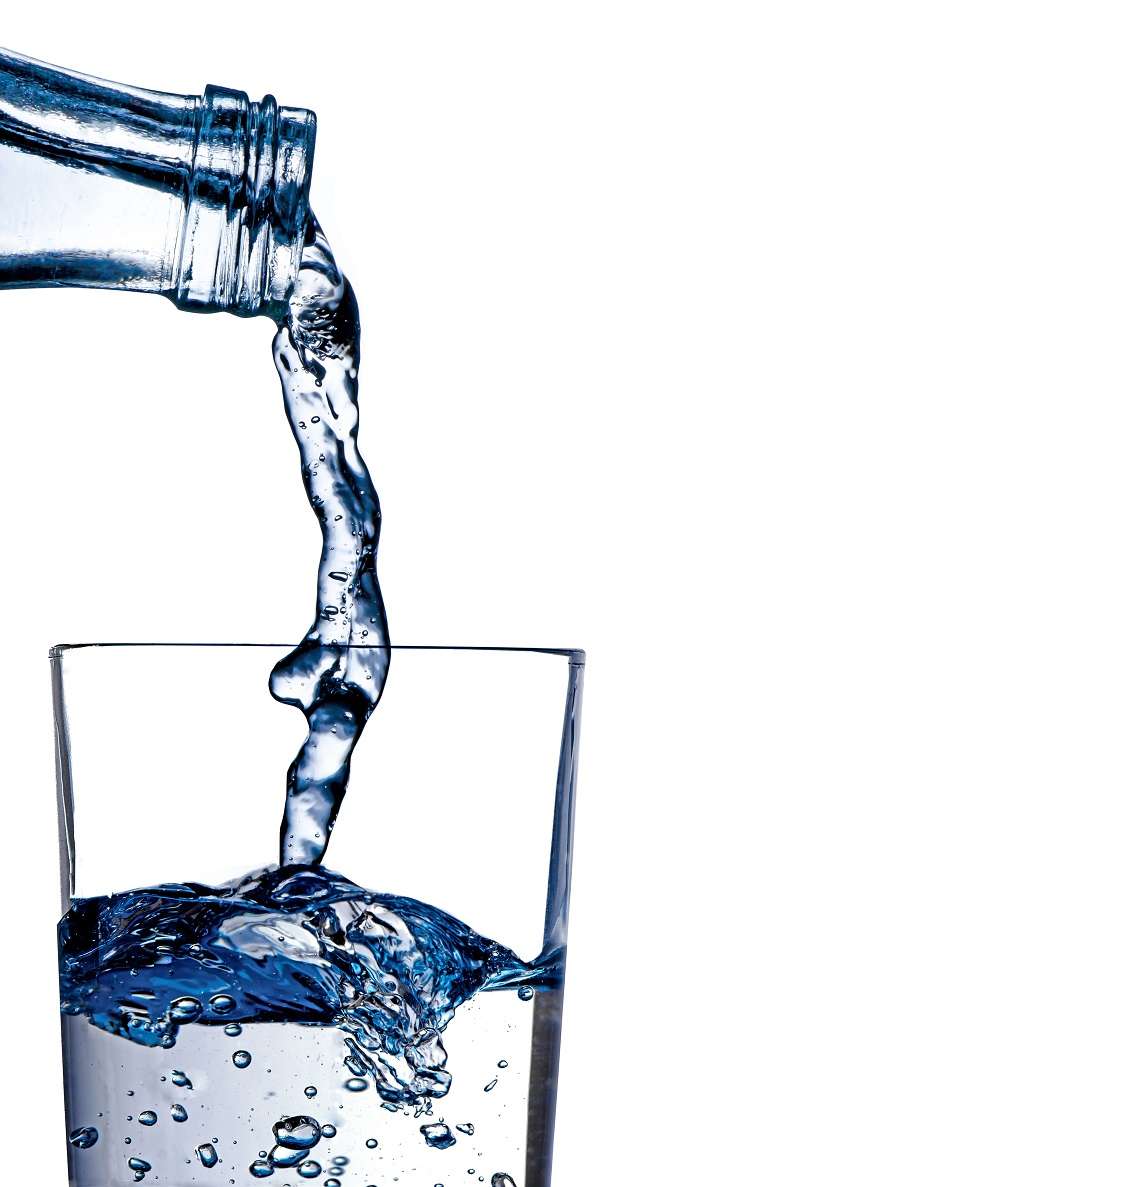 Trinkwasser Probenahme